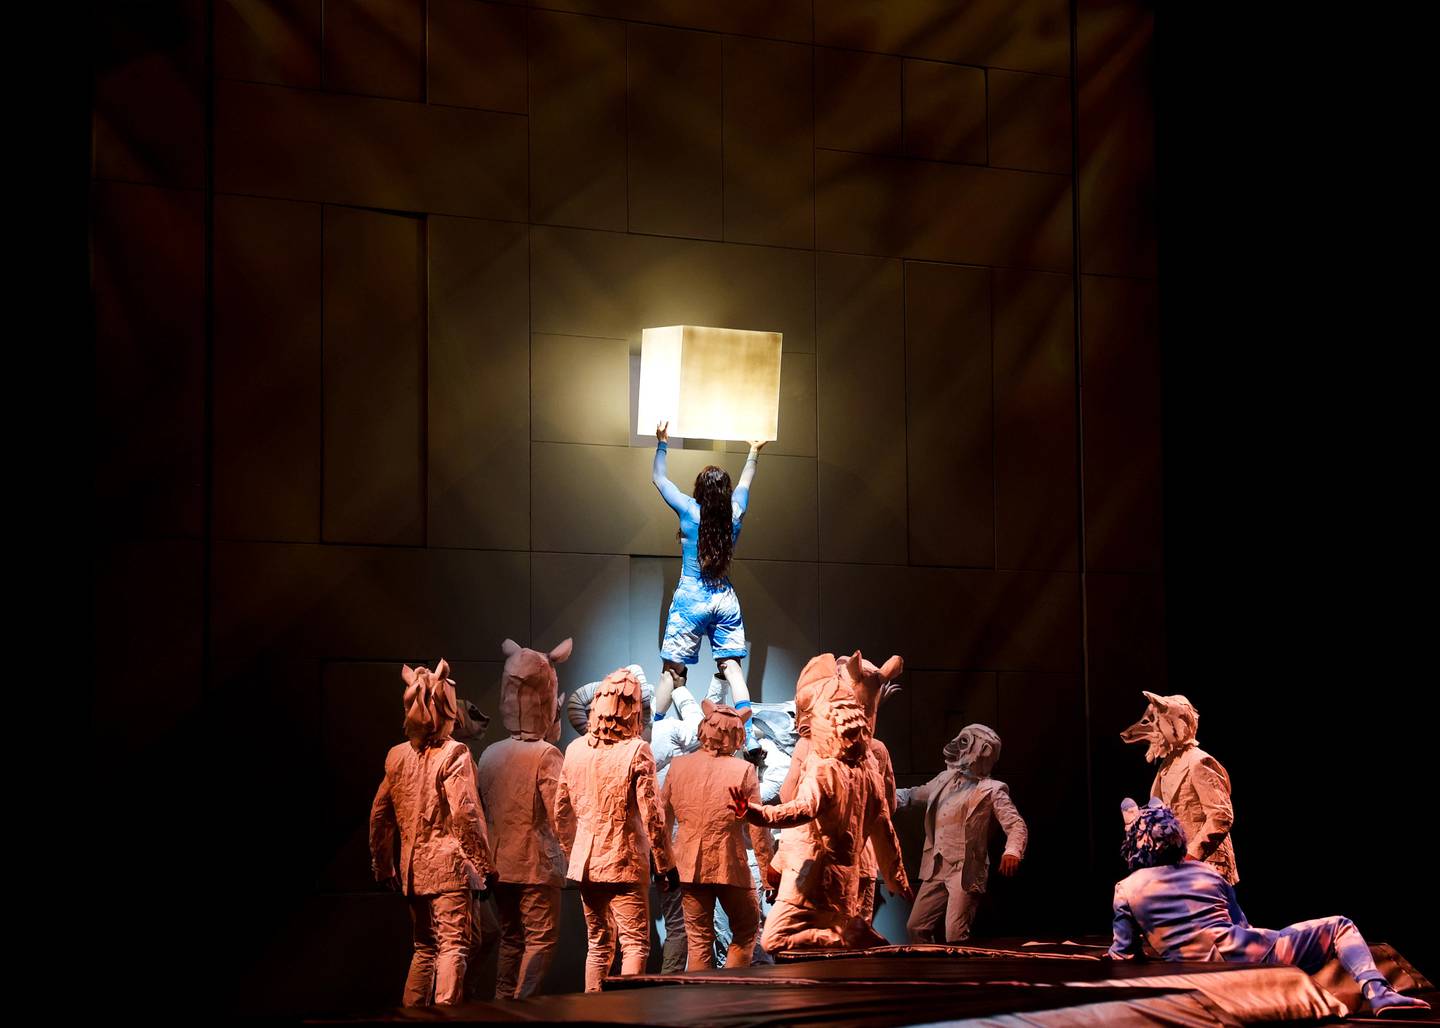 Espectáculo Echo, que ahora presenta el Cirque du Soleil en Atlanta (Estados Unidos). Es un espectáculo acerca del delicado balance entre los seres humanos y la naturaleza, así como el poder de las acciones para modelar el futuro. Cuenta con 52 artistas de 19 nacionalidades. Circo del Sol. Crédito Jean-François Savaria/Cirque du Soleil 2023.